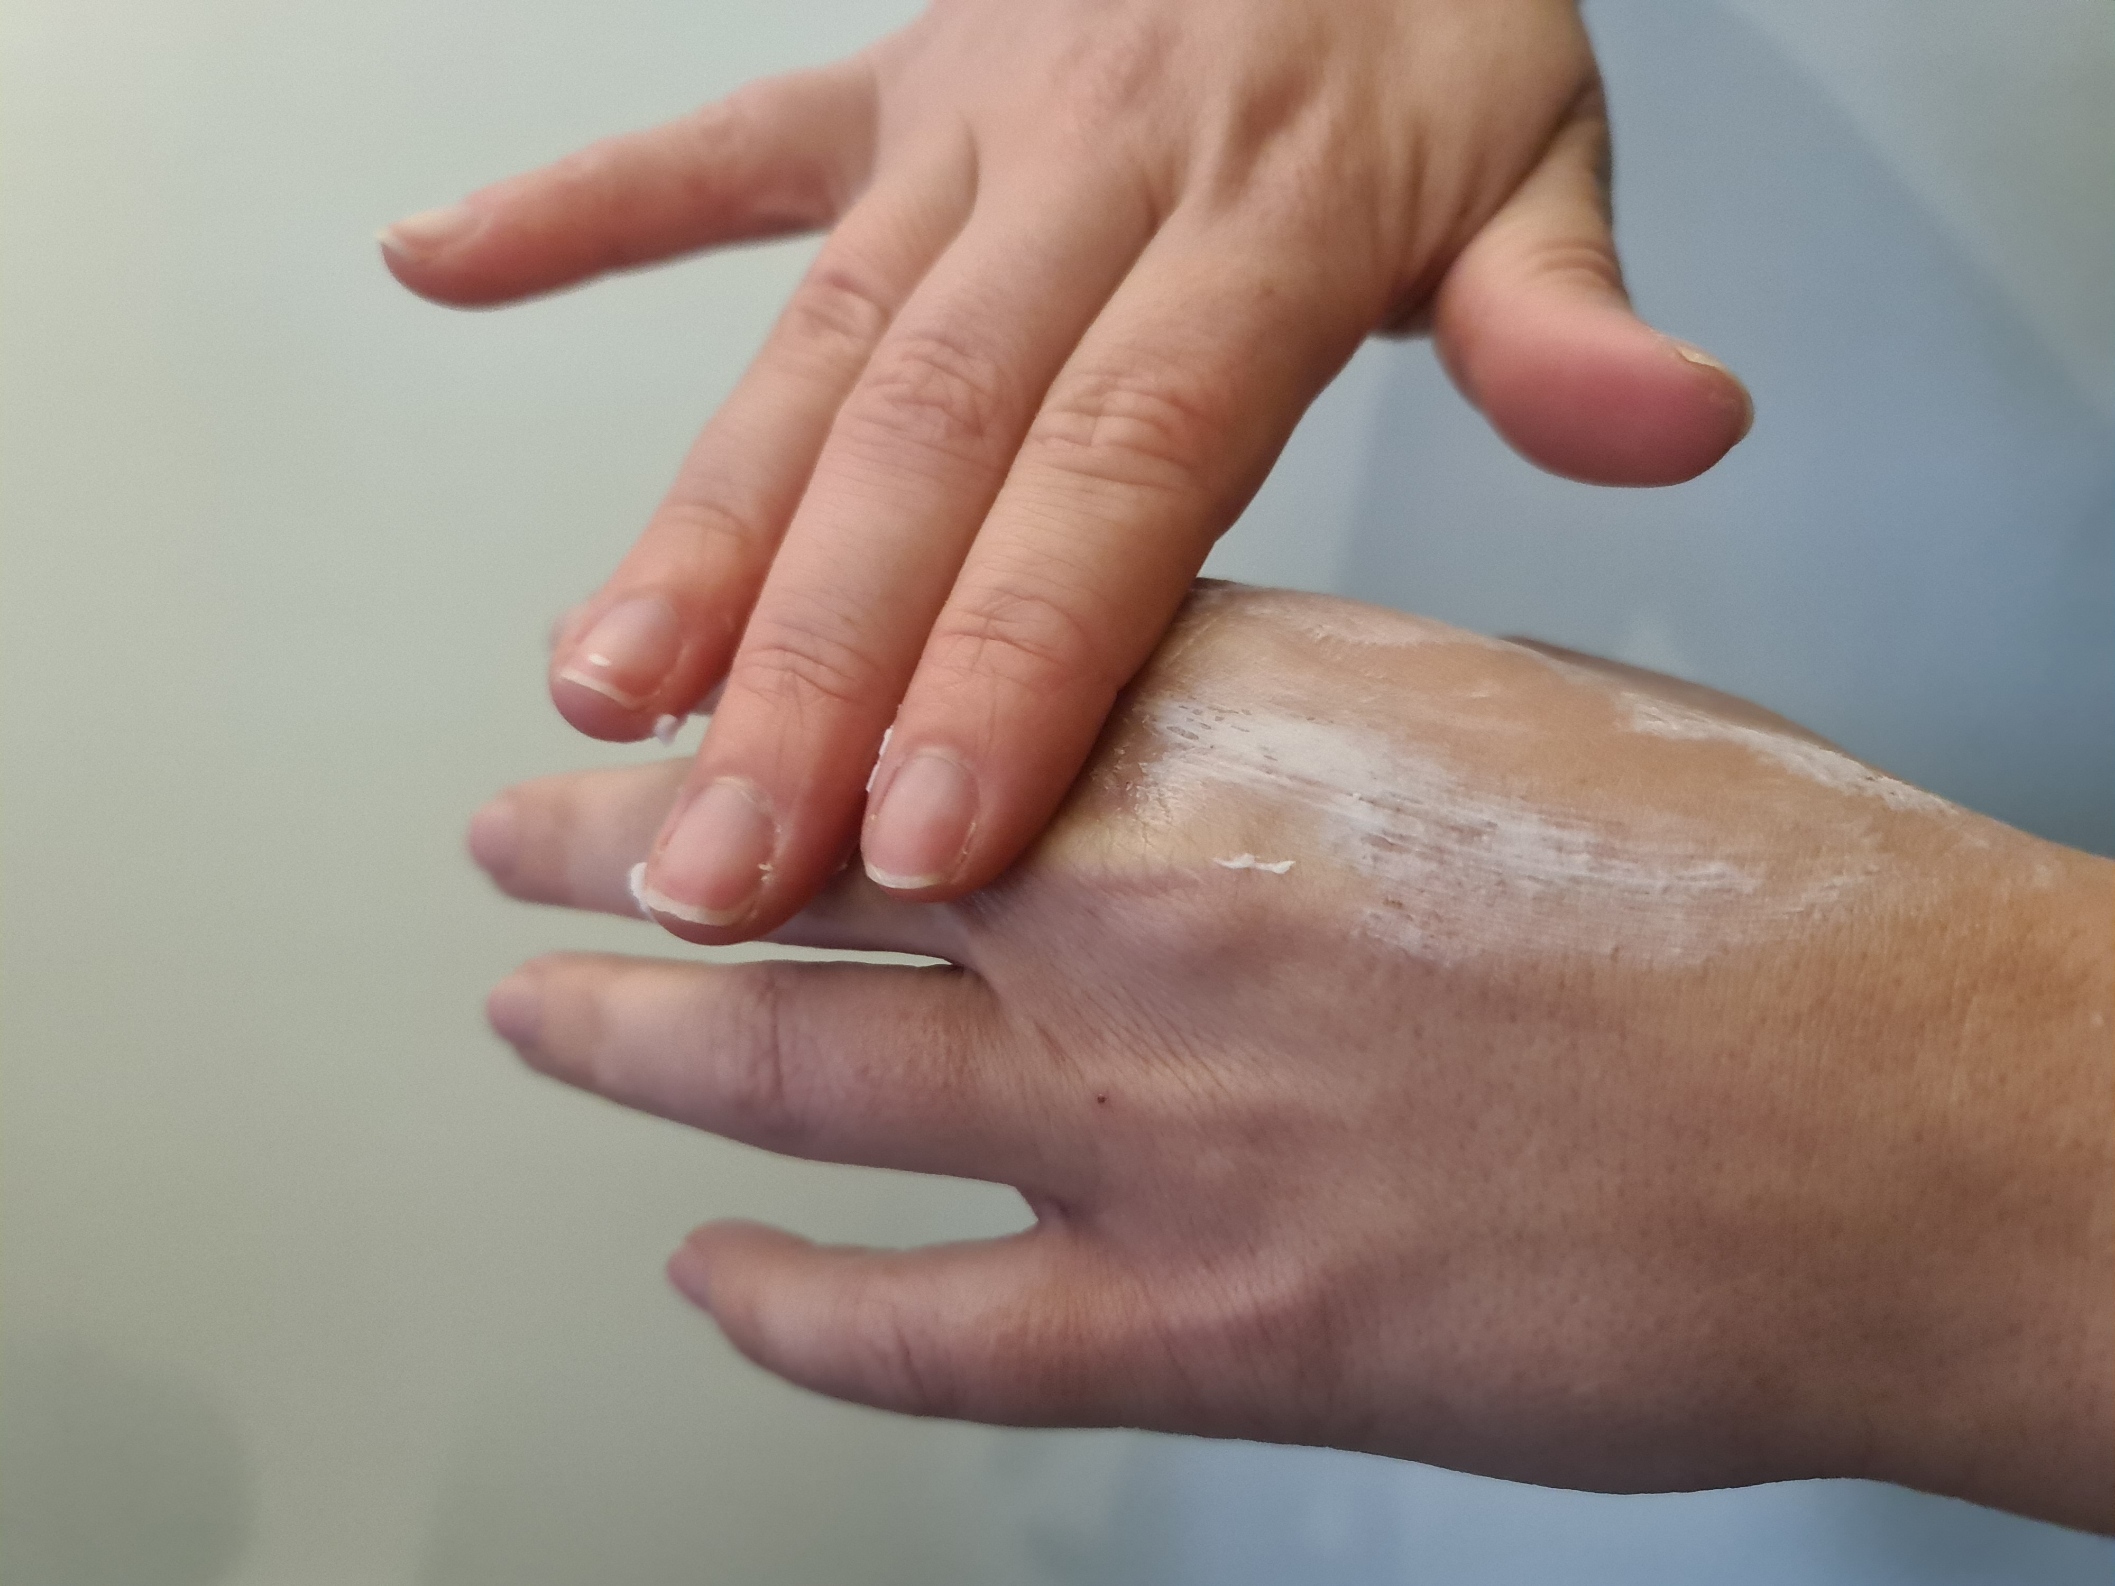 Comment soigner une crevasse sur les mains ? Dermophil